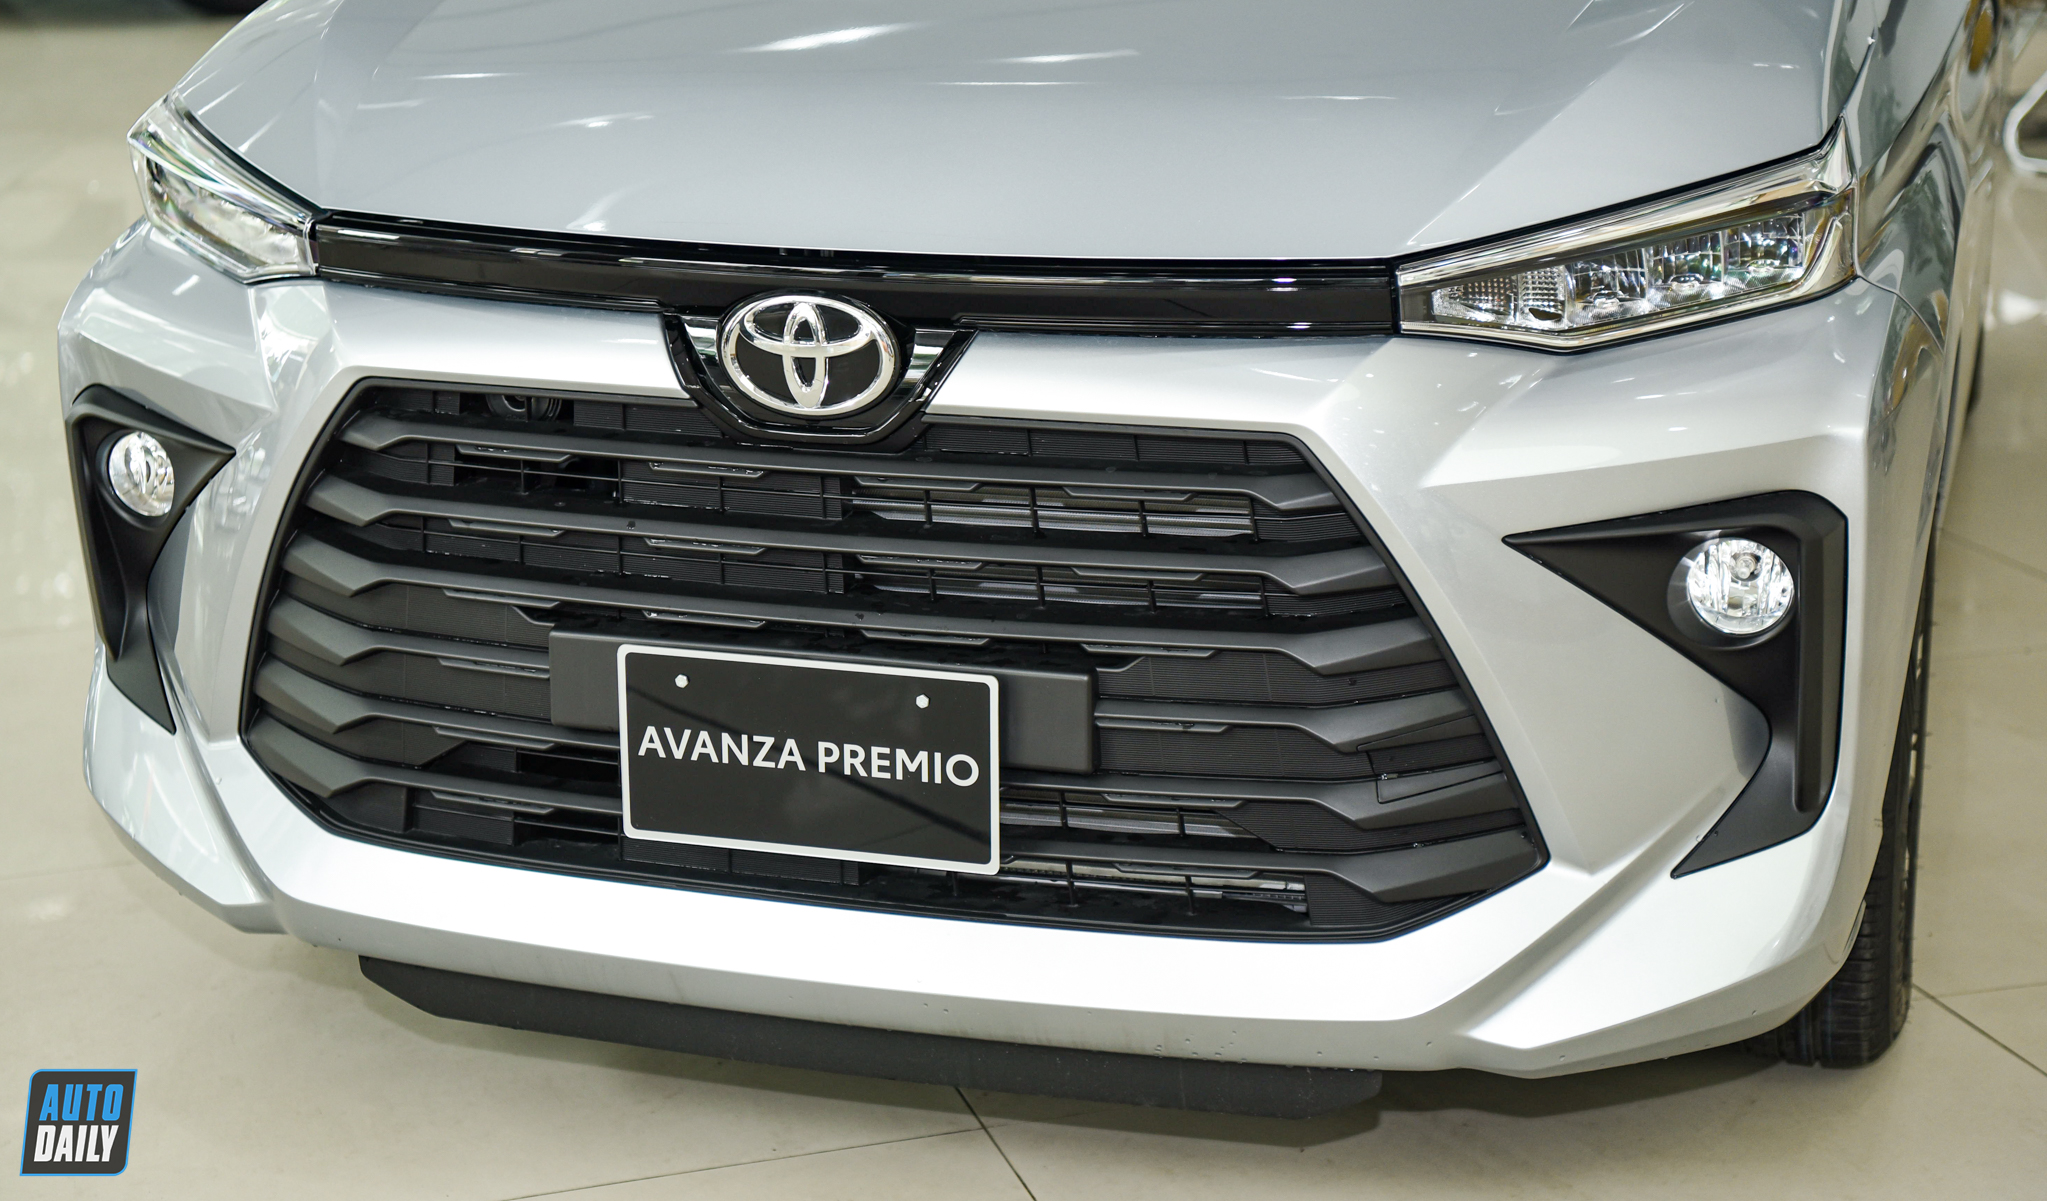 Cận cảnh Toyota Avanza Premio 2022 giá 588 triệu tại đại lý adt-4910.jpg